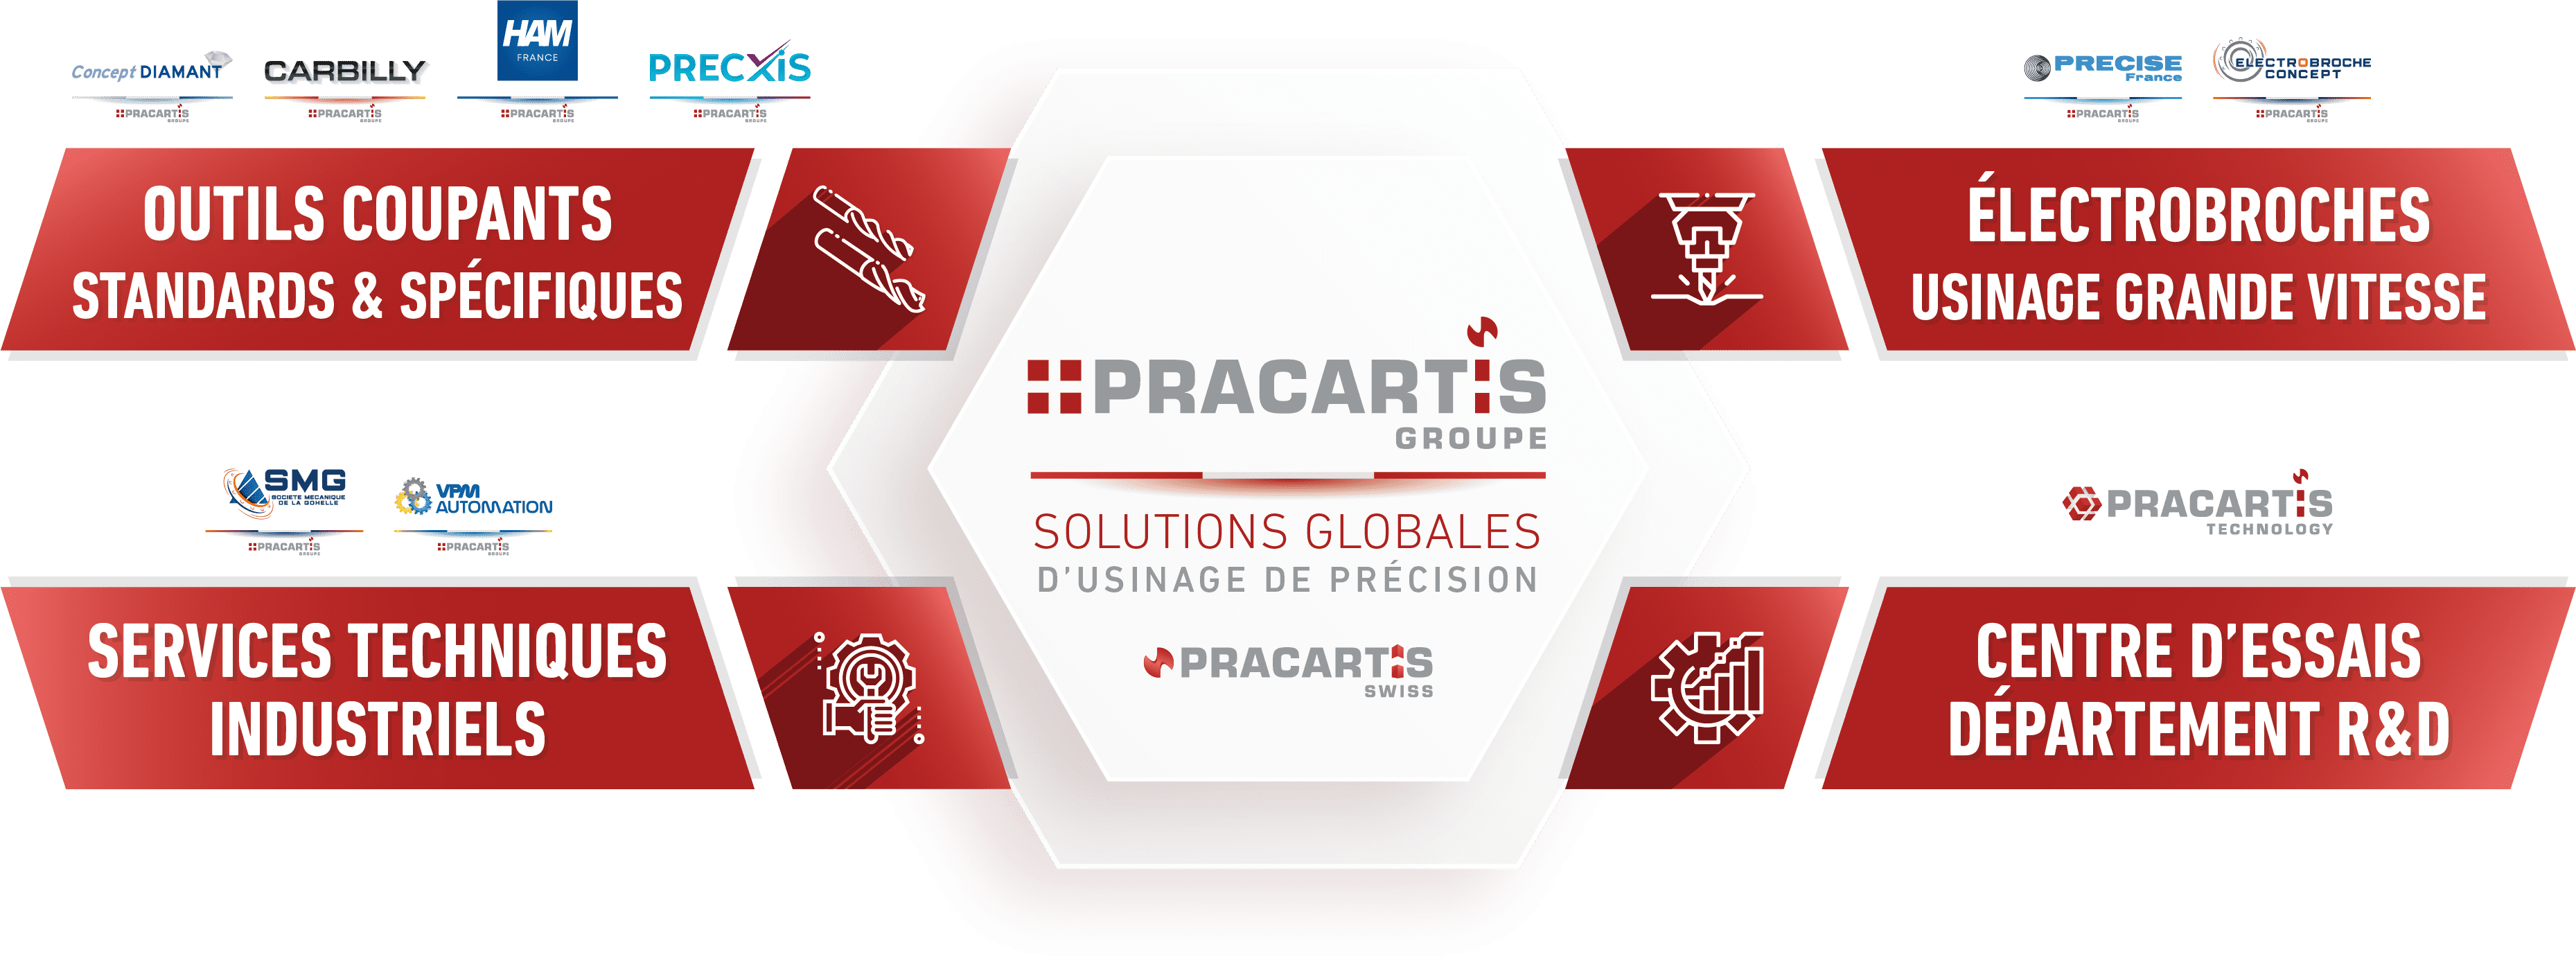 PRACARTIS Groupe - Outils coupants - Electrobroches UGV - Services techniques industriels - Centre d'essais & recherche